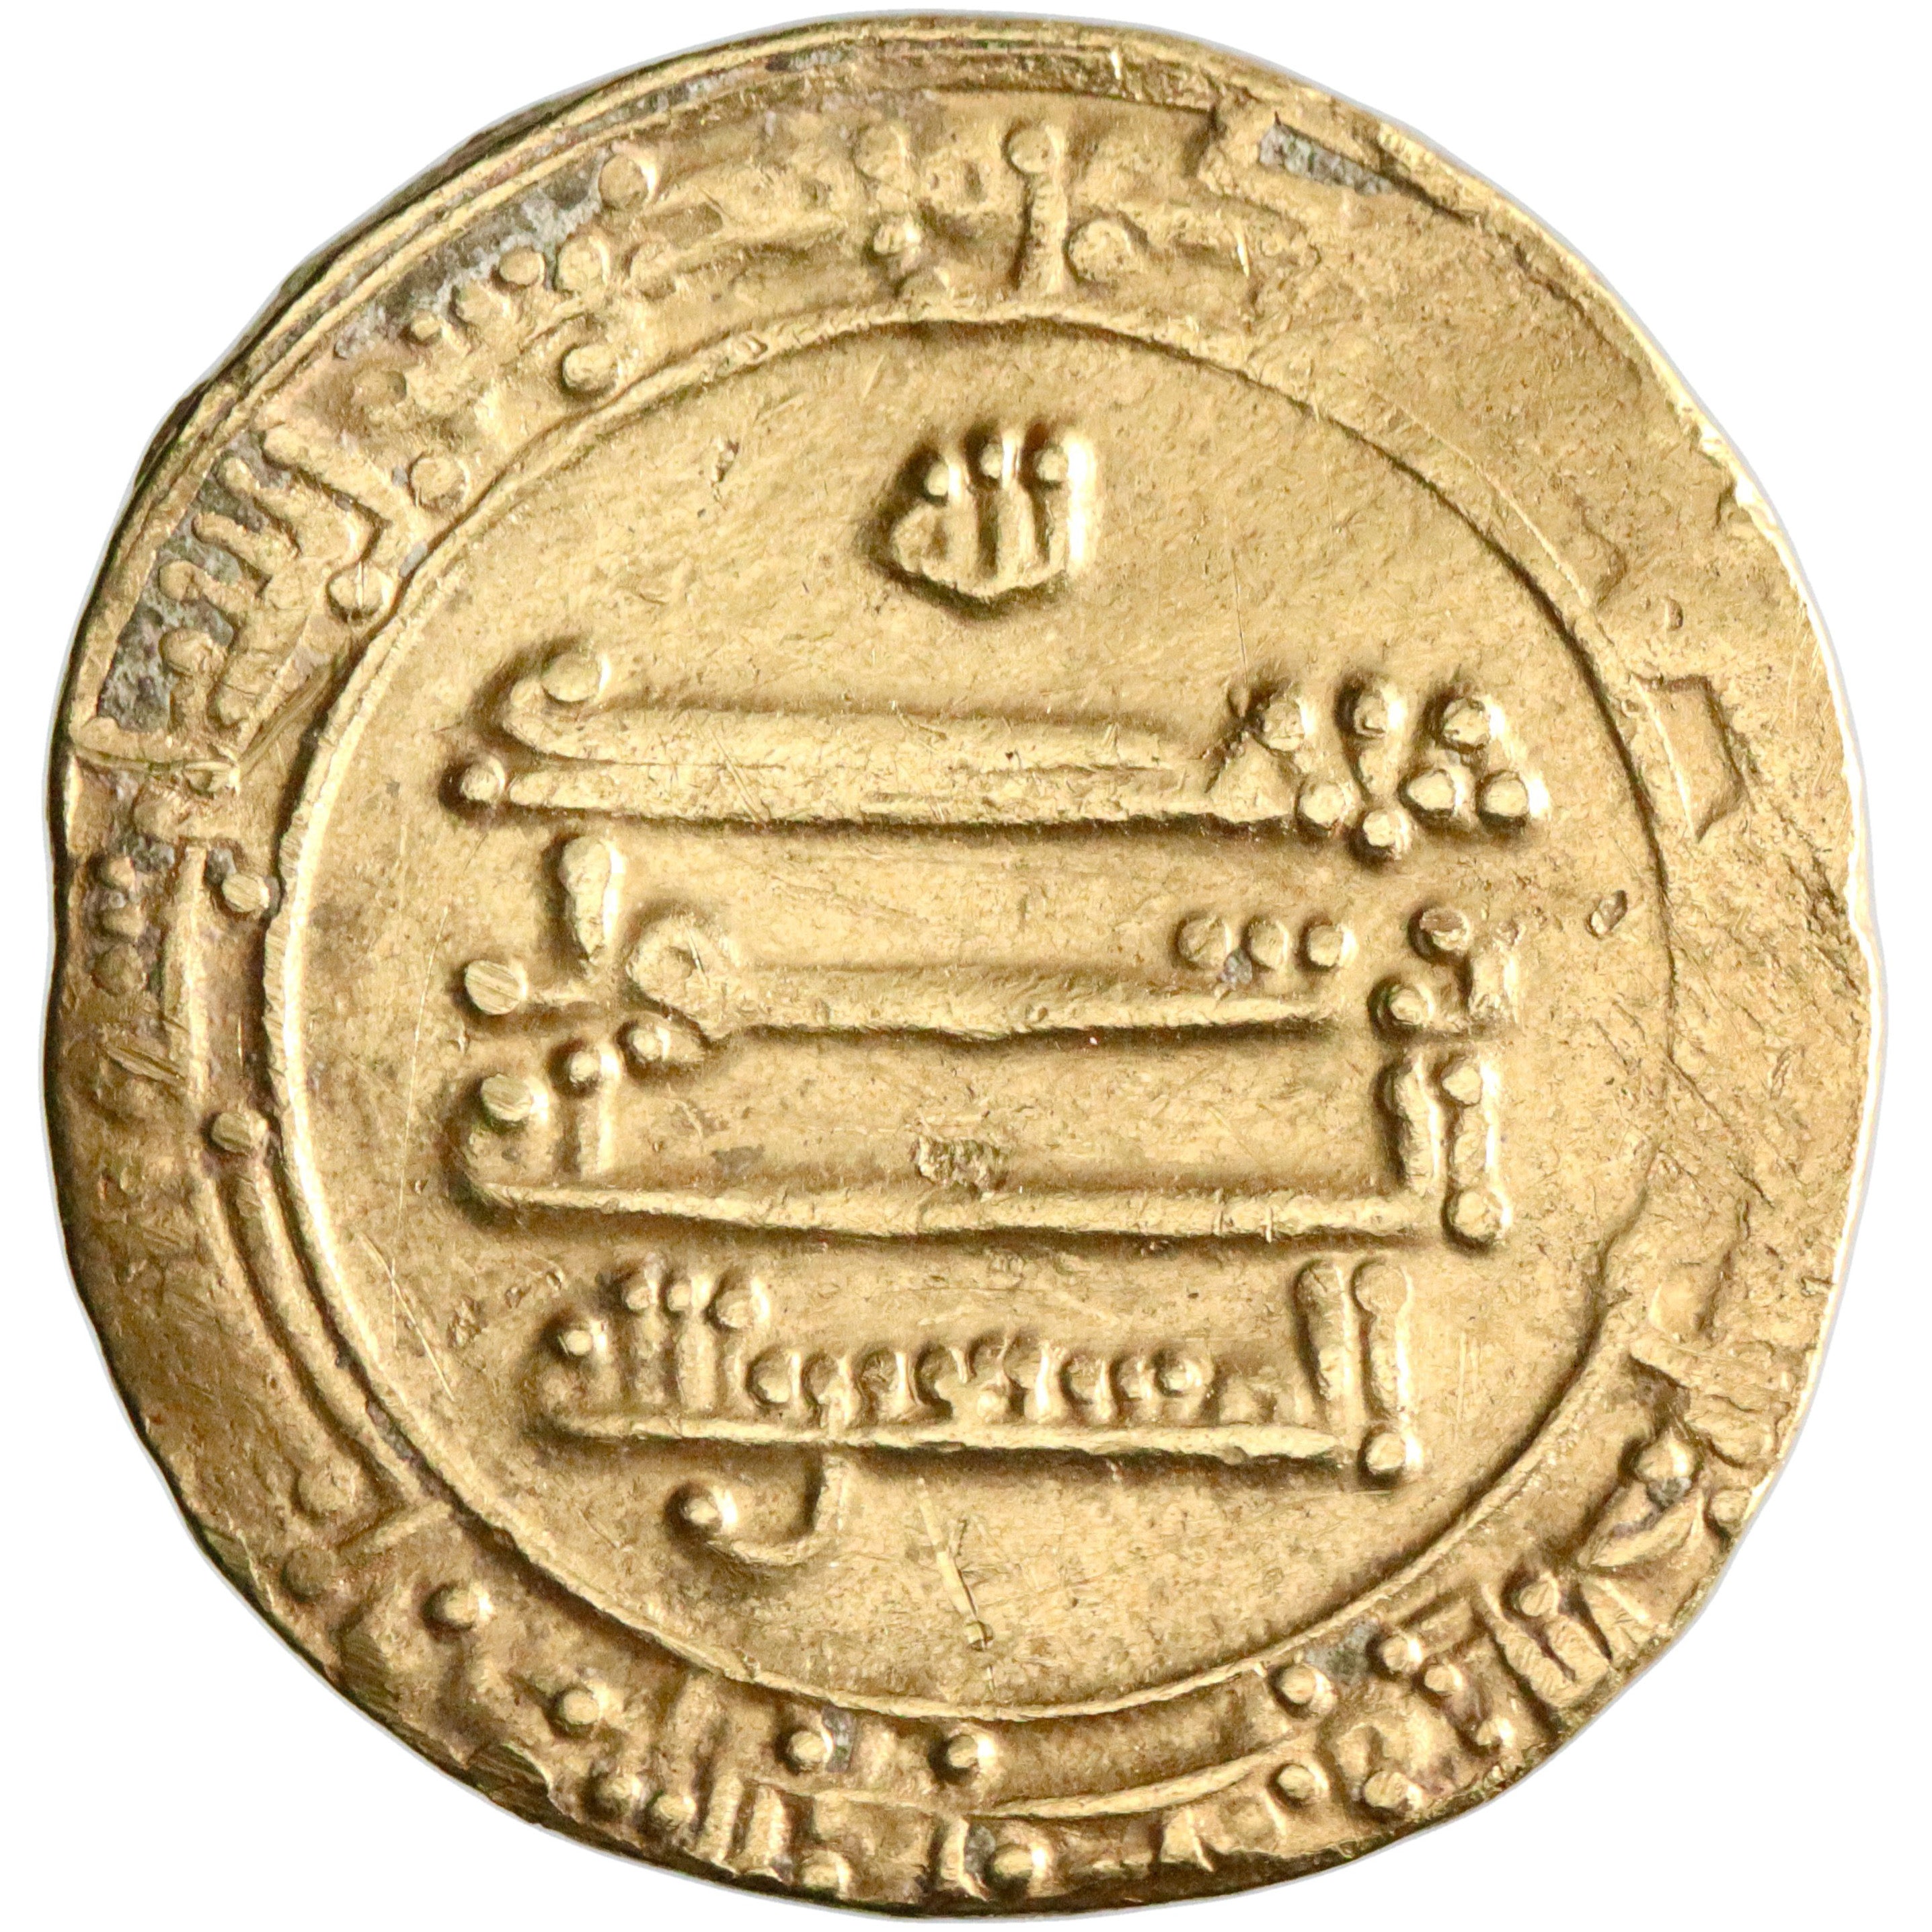 Abbasid, al-Musta'in, gold dinar, Madinat al-Salam (Baghdad) mint, AH 251, citing al-'Abbas